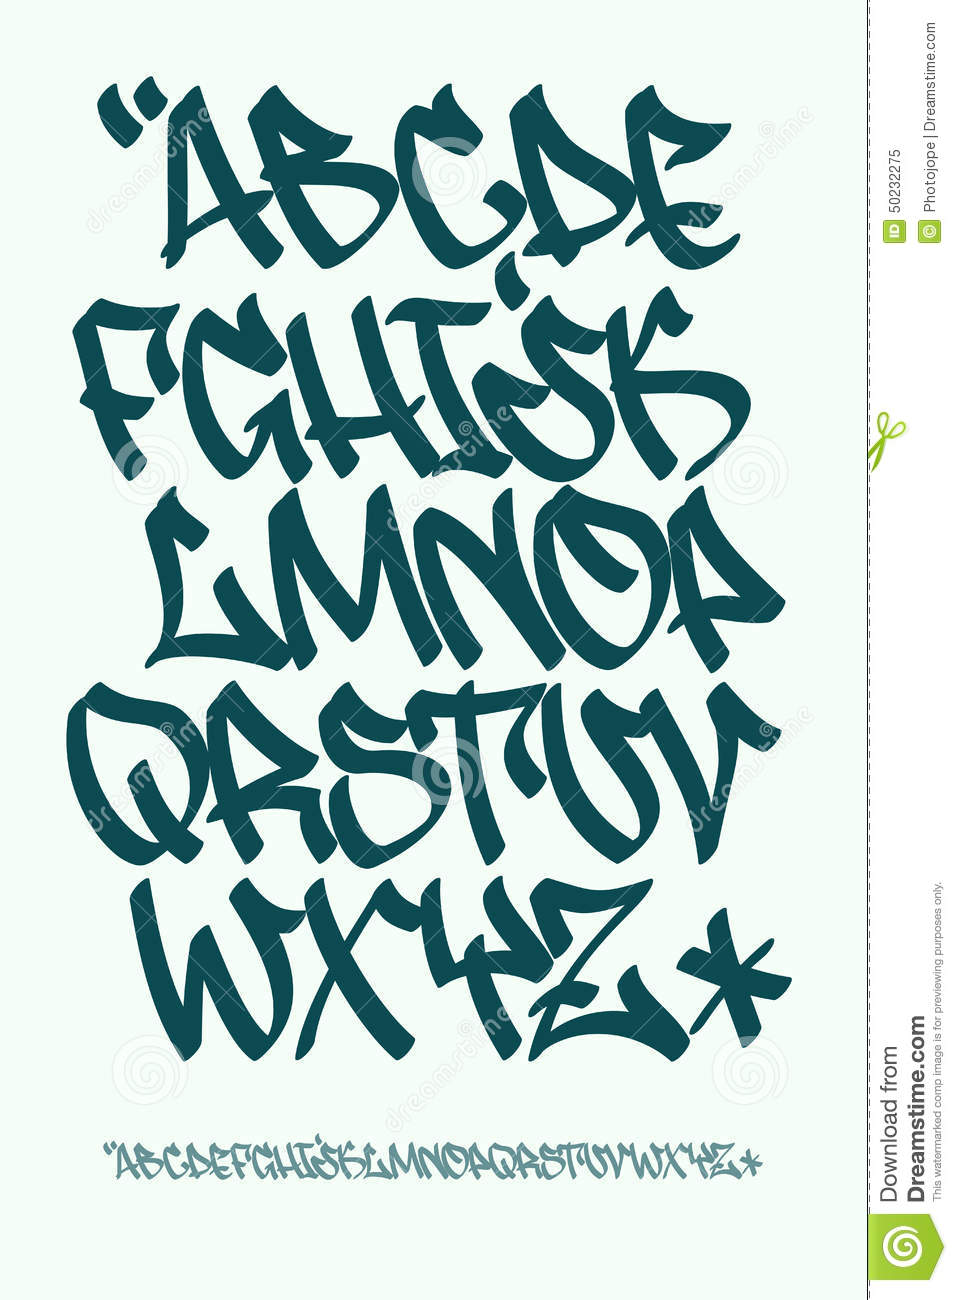 easy graffiti letters alphabet